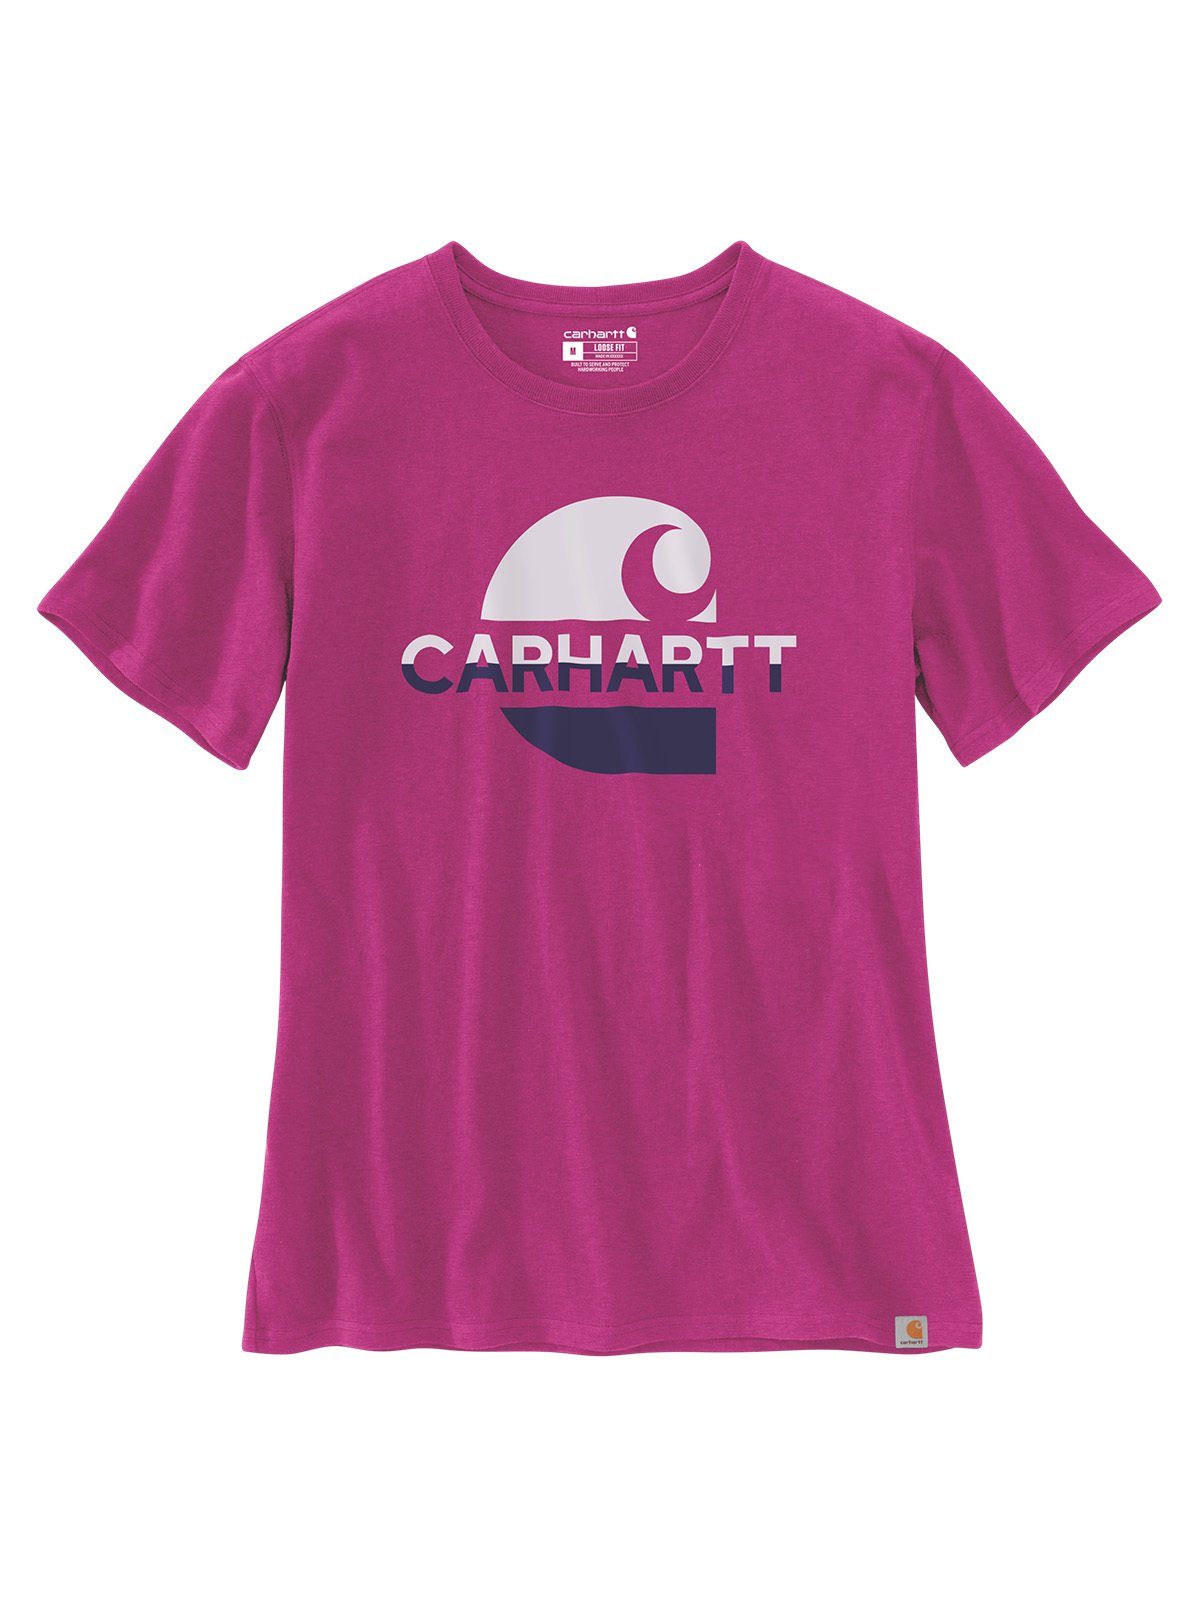 T-Shirt pink Carhartt T-Shirt magenta Damen agate Graphic Carhartt